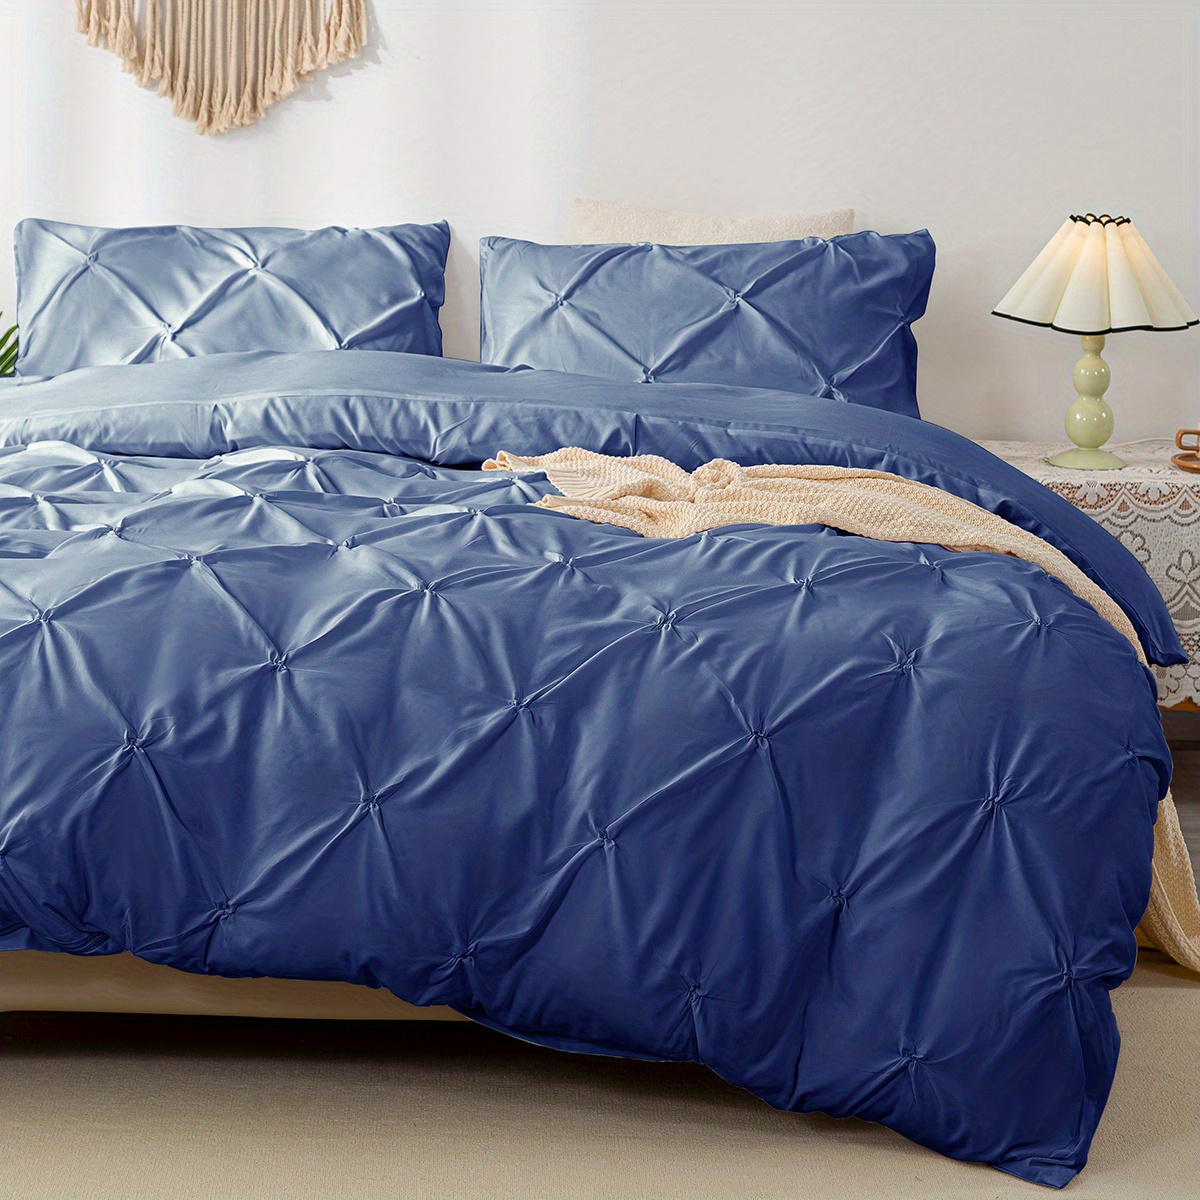 Juego de ropa de cama 3 piezas, cobertor acolchonado tamaño Queen de  algodón. Azul y blanco.